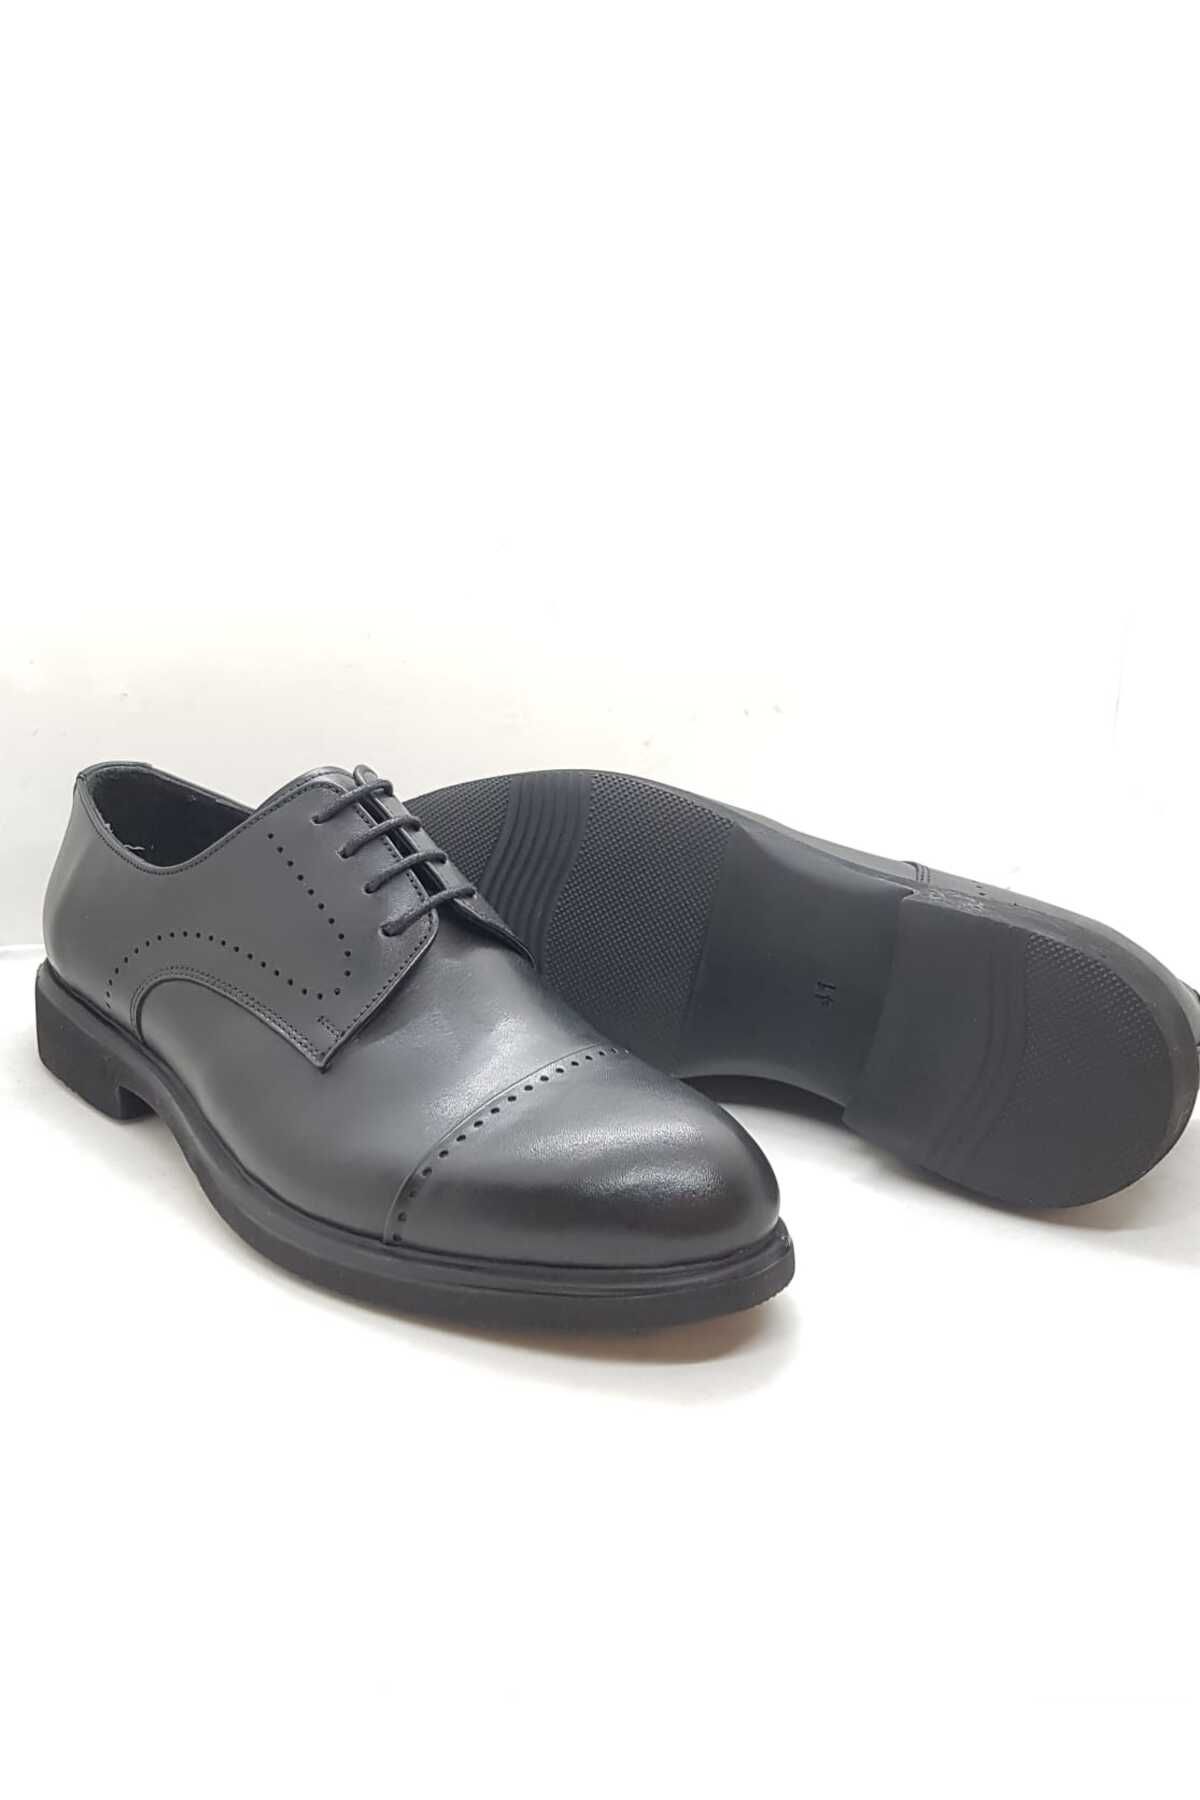 Neco eva taban klasik ayakkabı hakiki deri bağcıklı model siyah renk